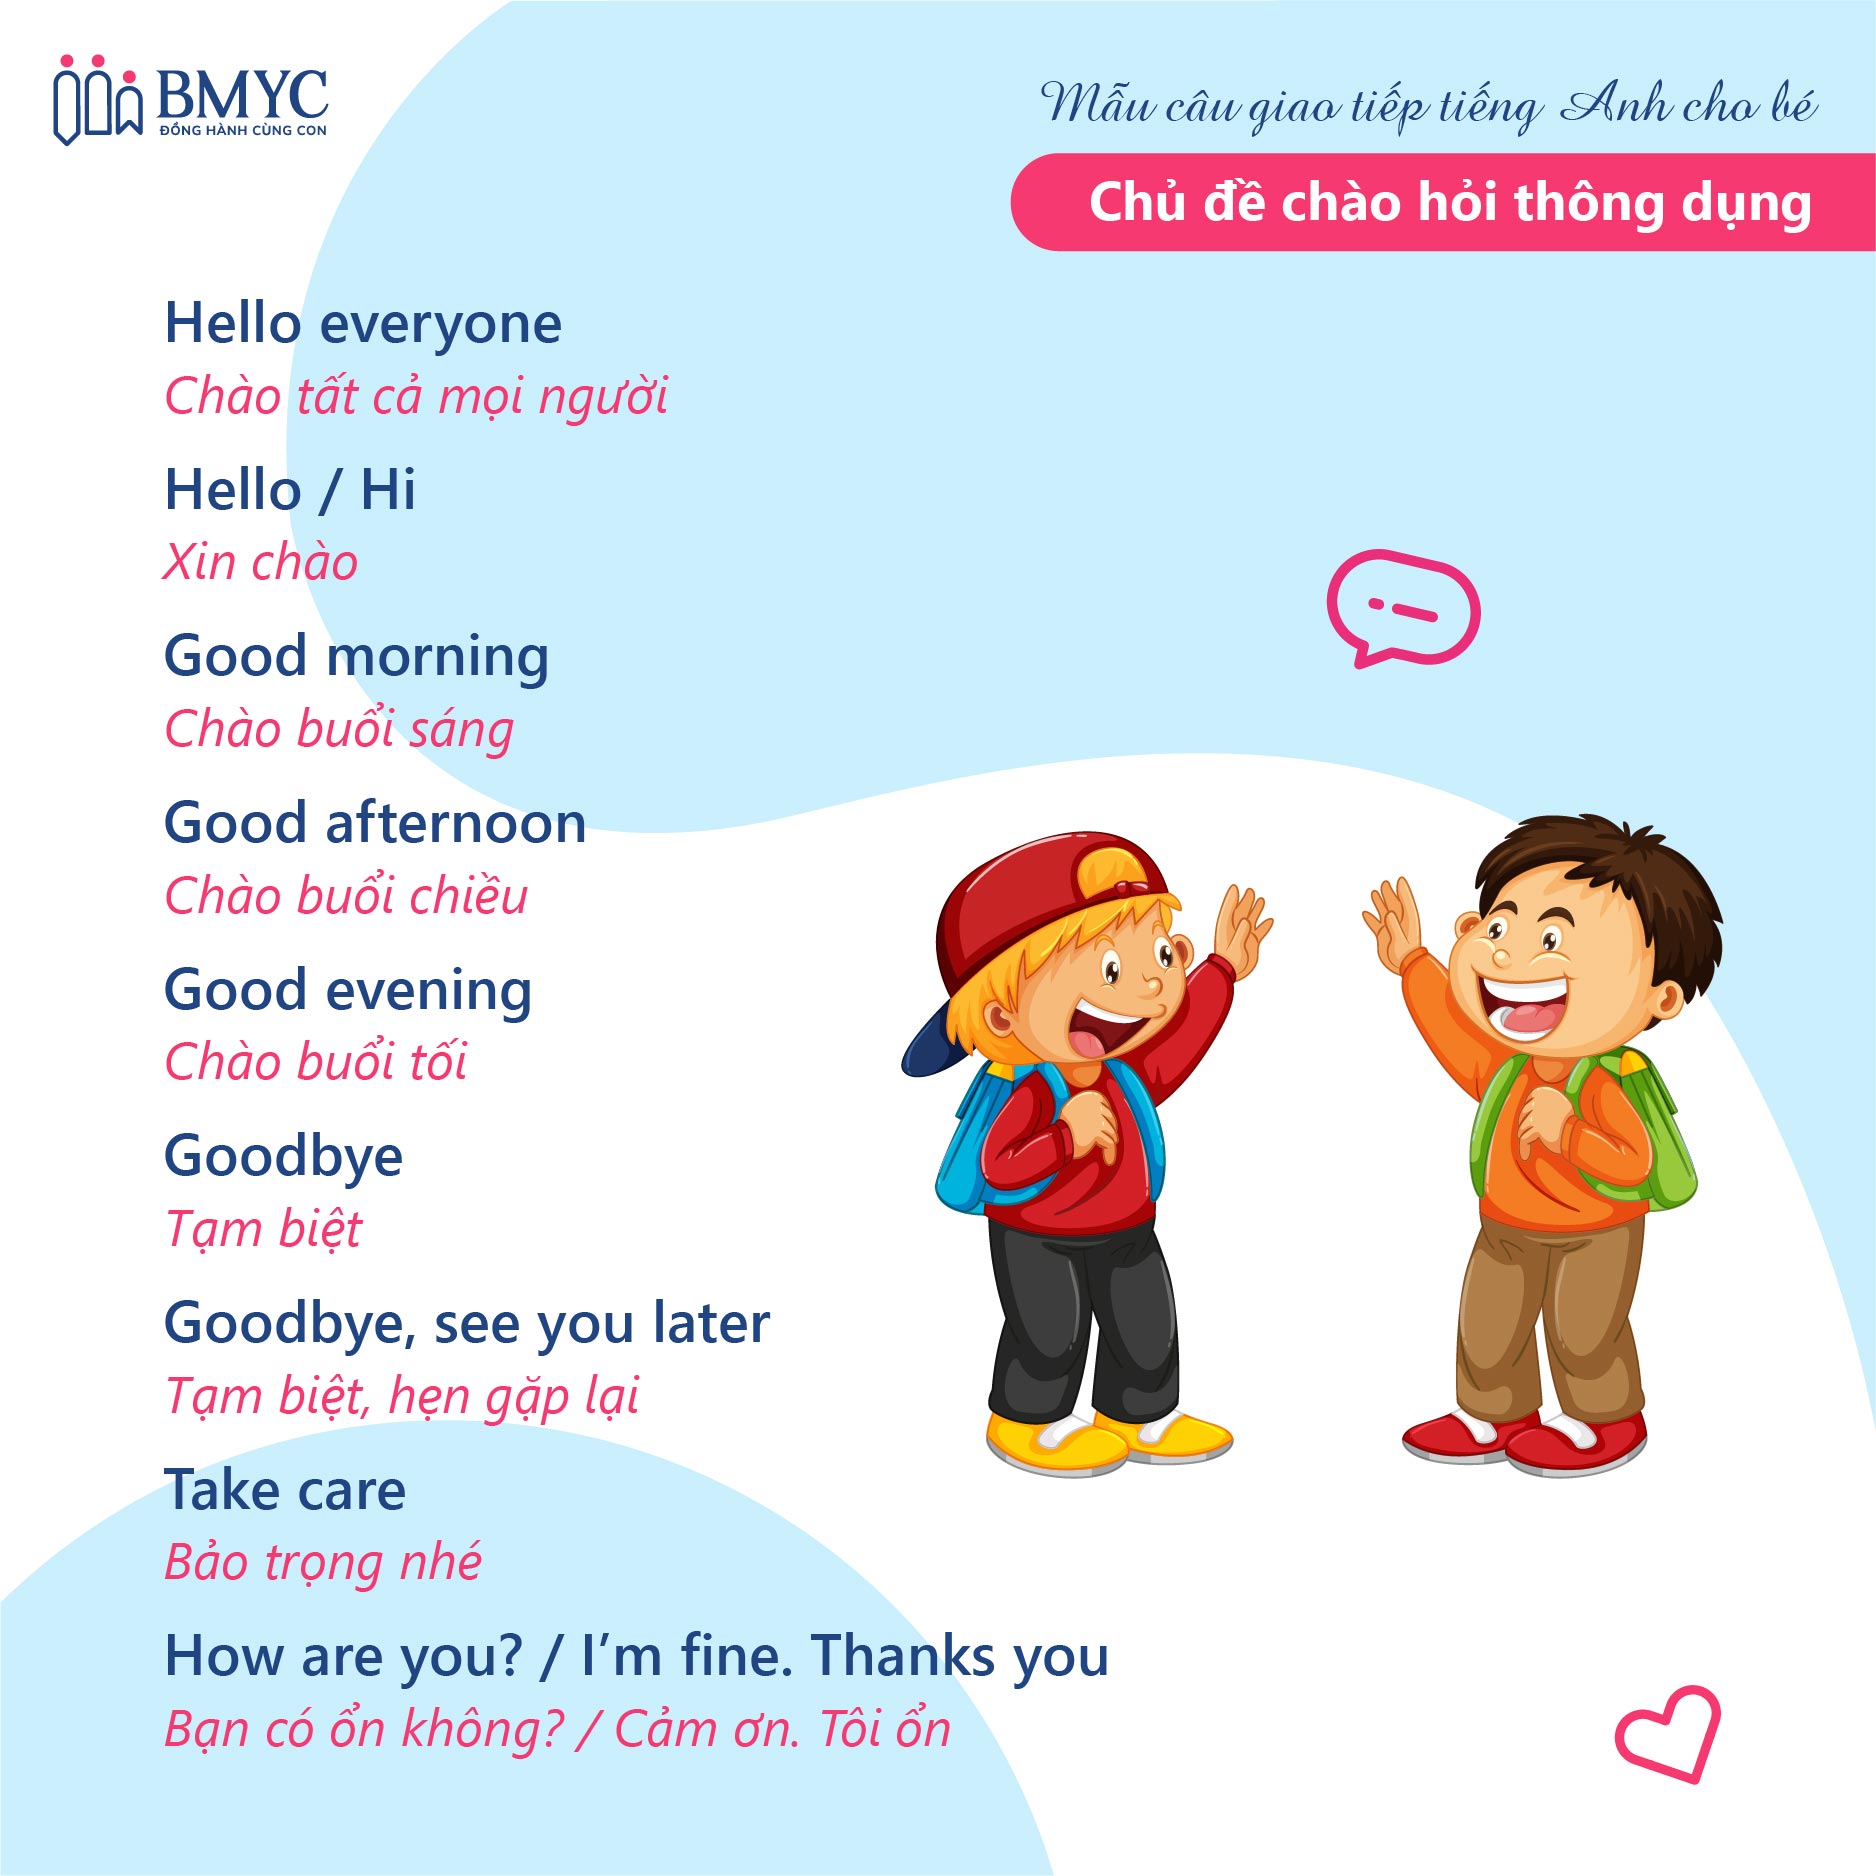 Mẫu câu giao tiếp tiếng Anh cho bé chủ đề chào hỏi thông dụng